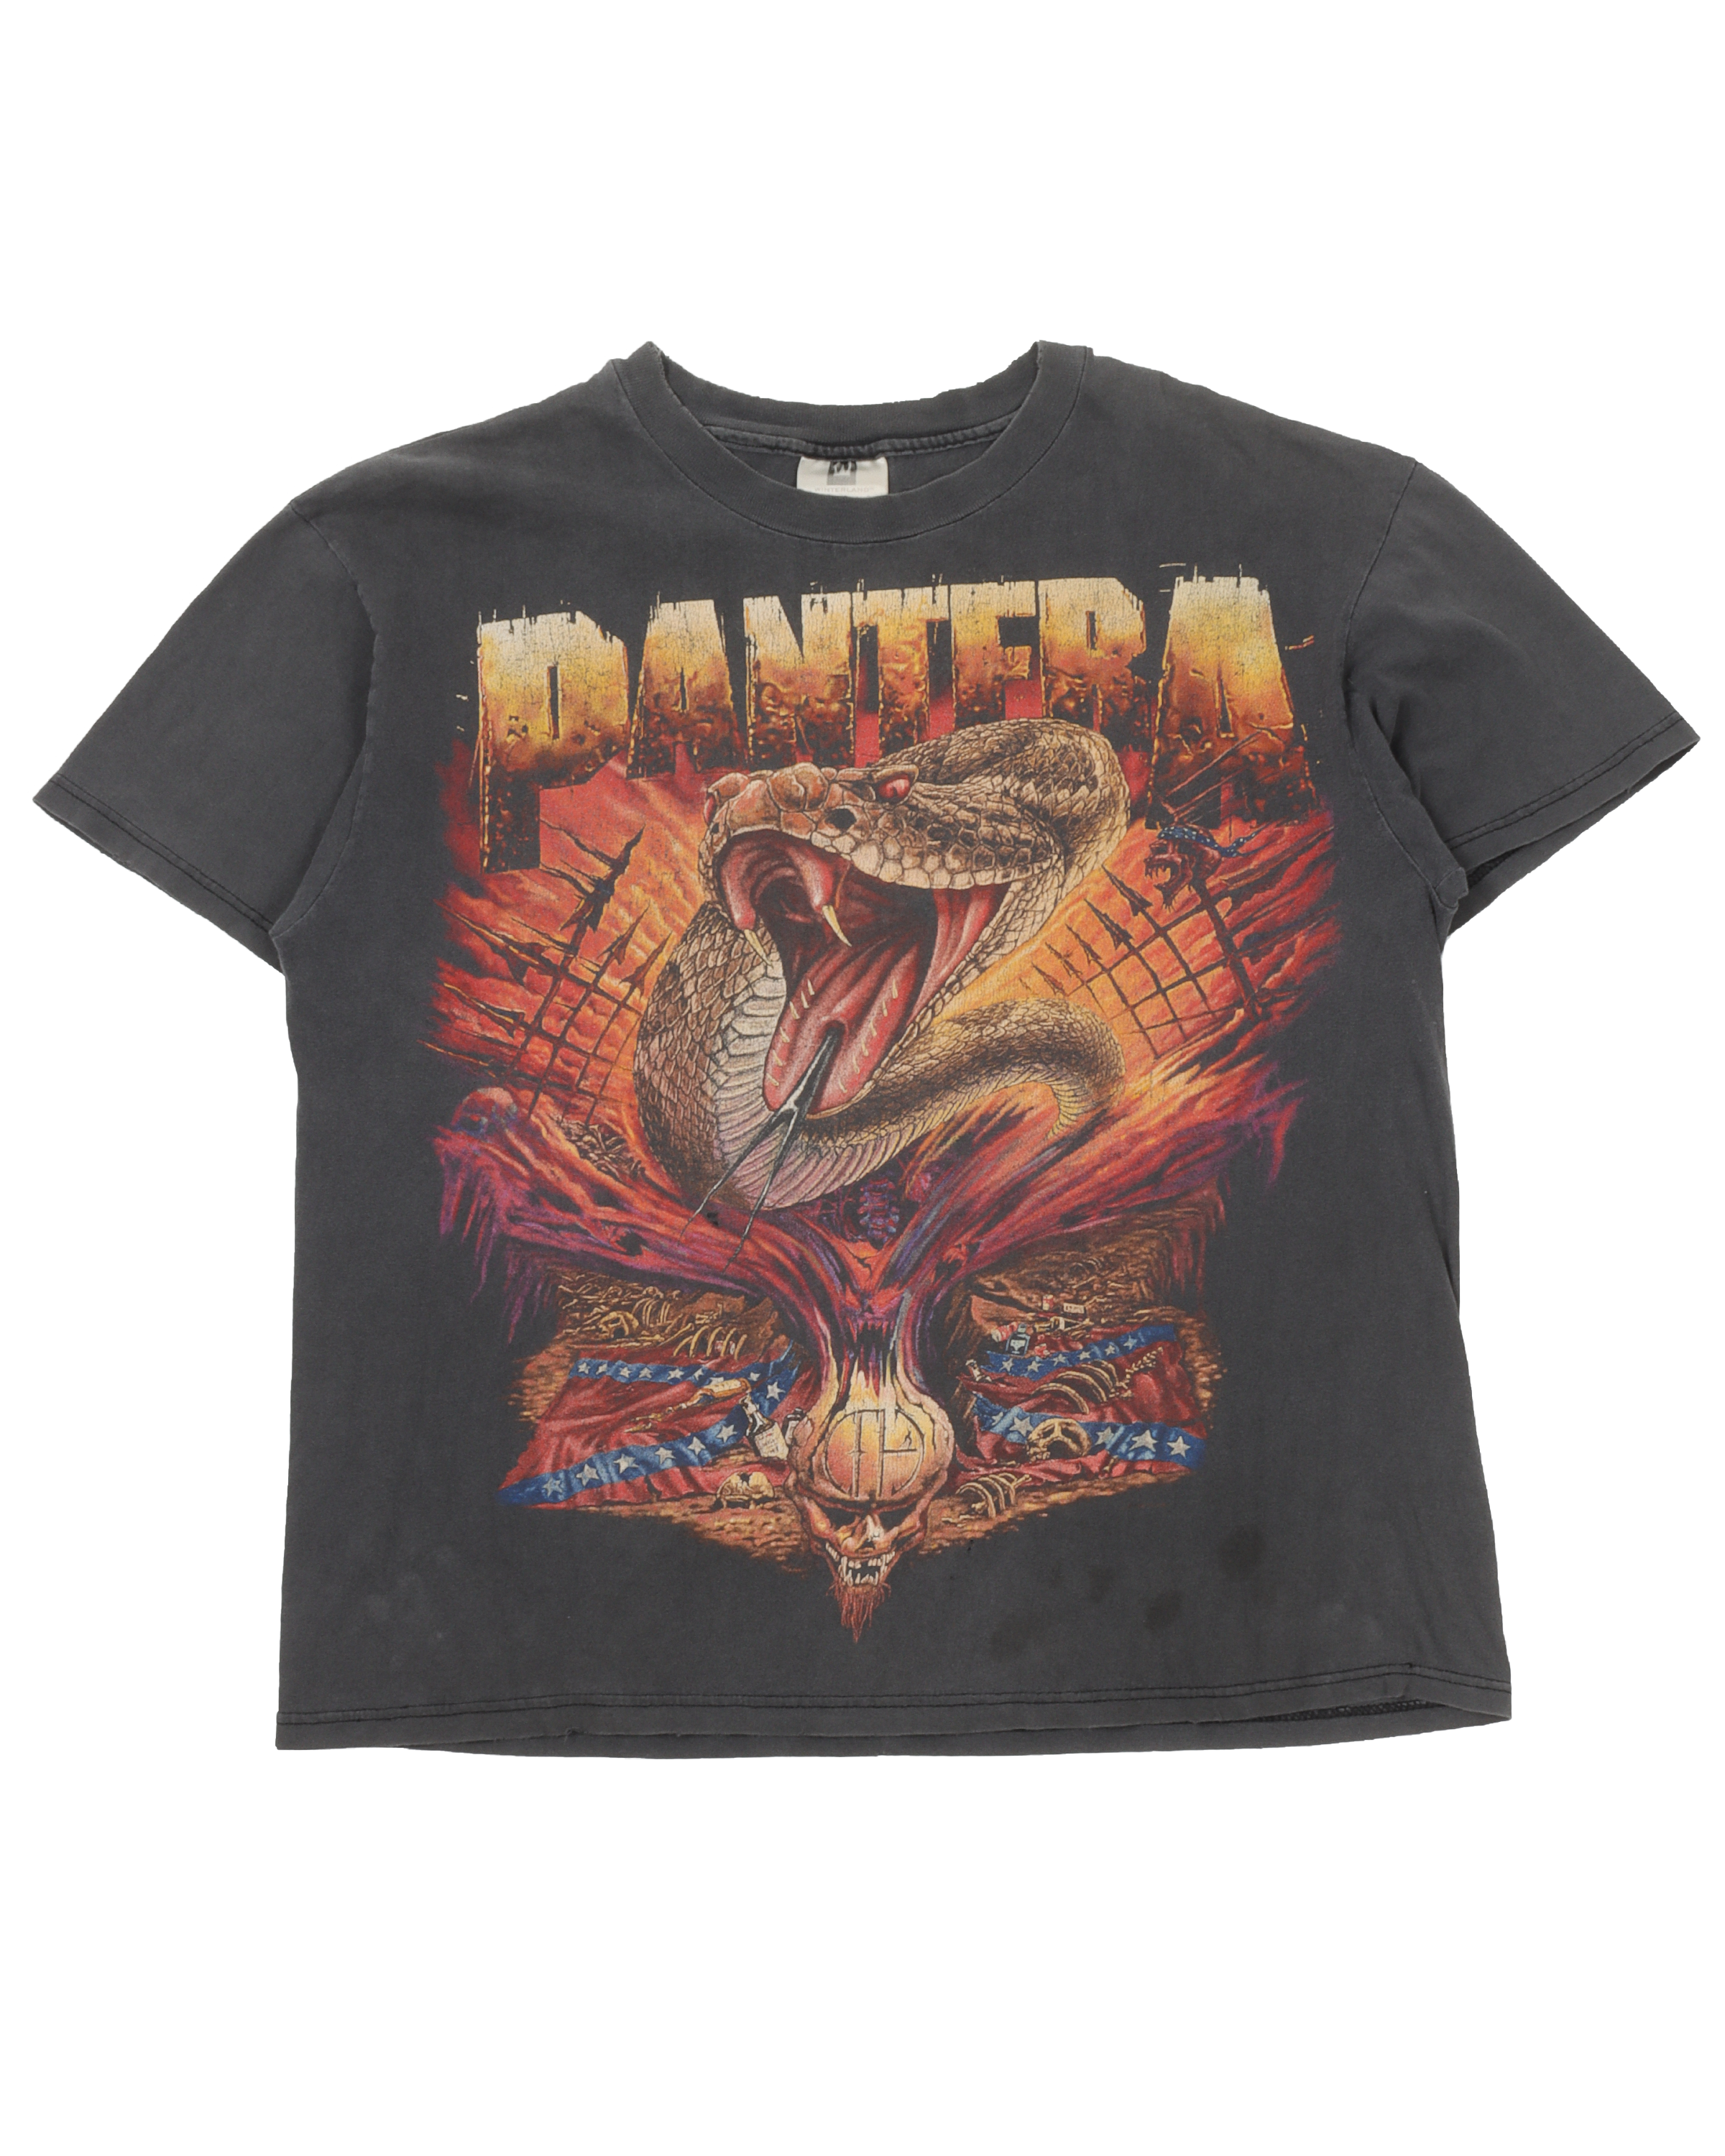 Pantera 1998 Tour T-Shirt